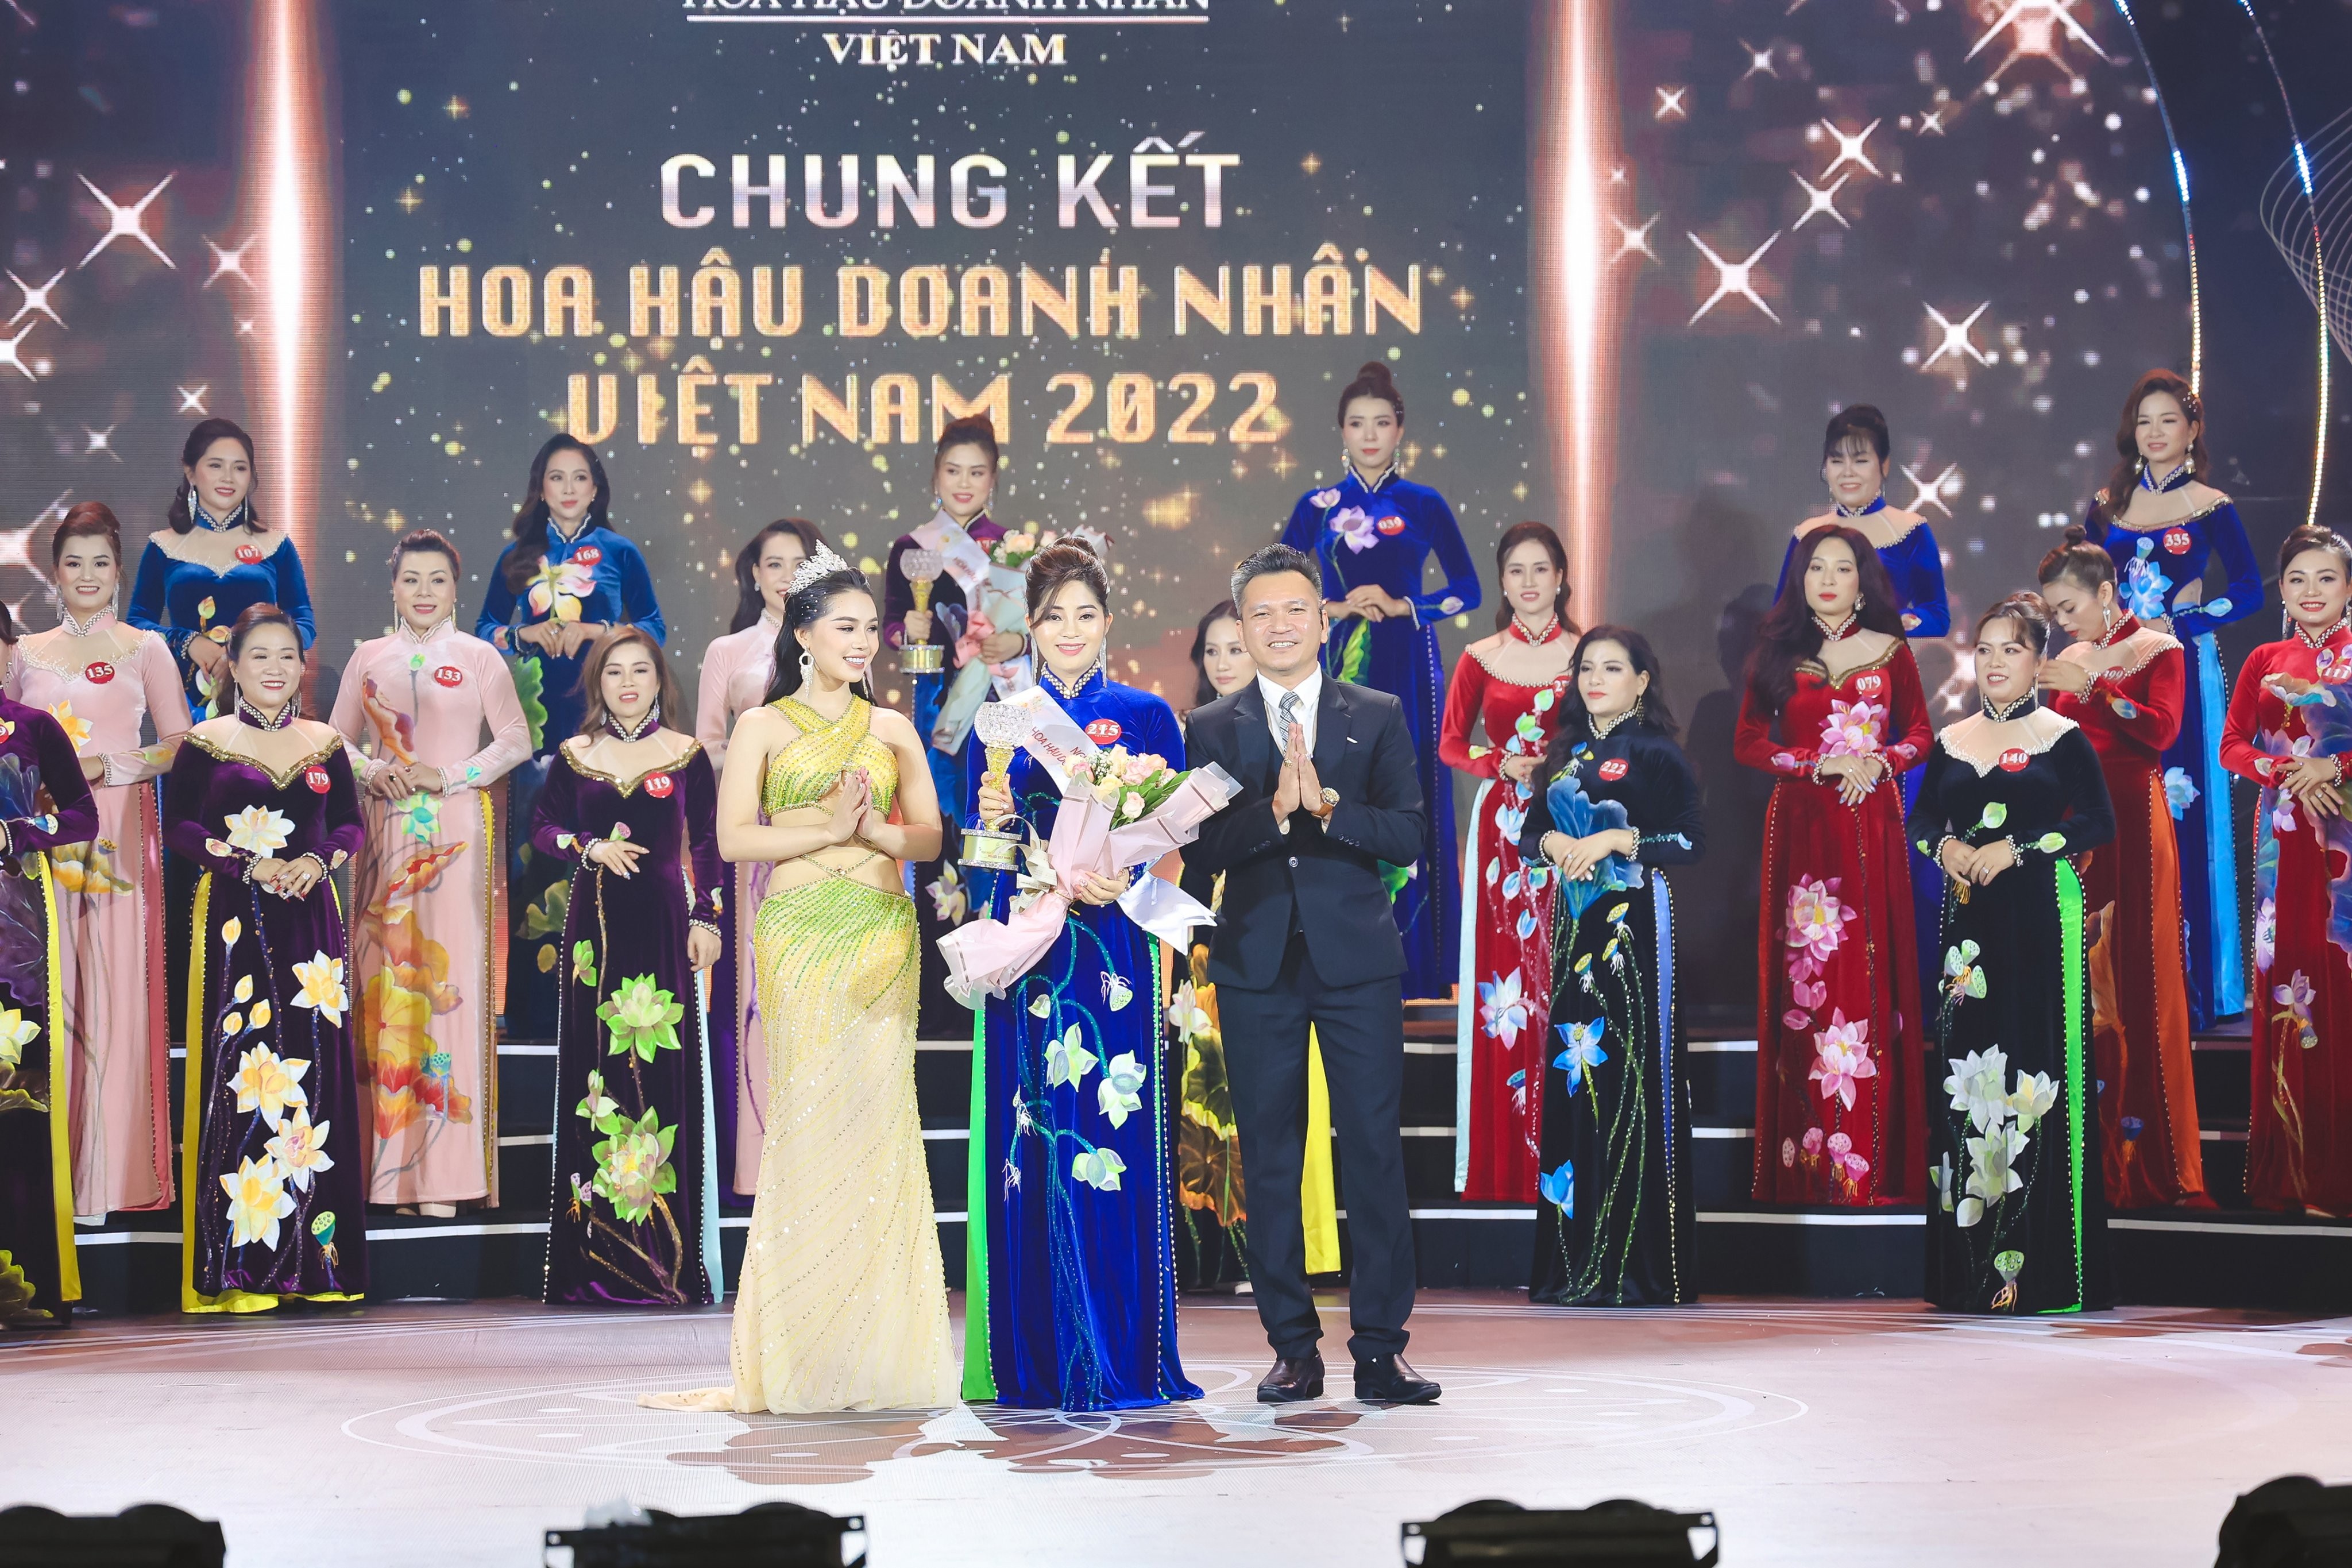 Doanh nhân Bùi Thị Liến tỏa sáng với danh hiệu “Người đẹp nhân ái” Hoa hậu Doanh nhân Việt Nam 2022